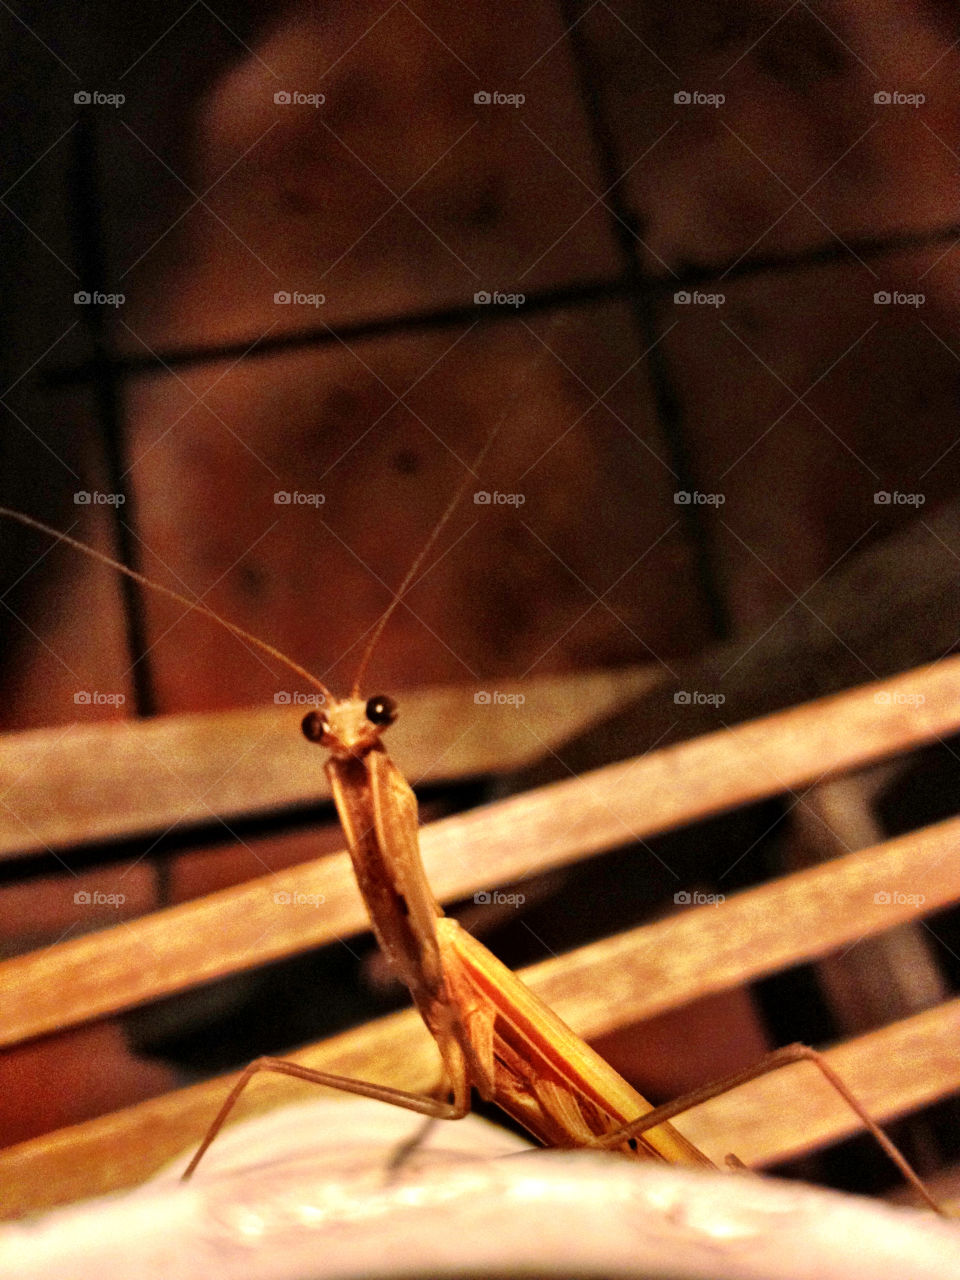 mantis praying mantis praying mantes close up by gdyiudt